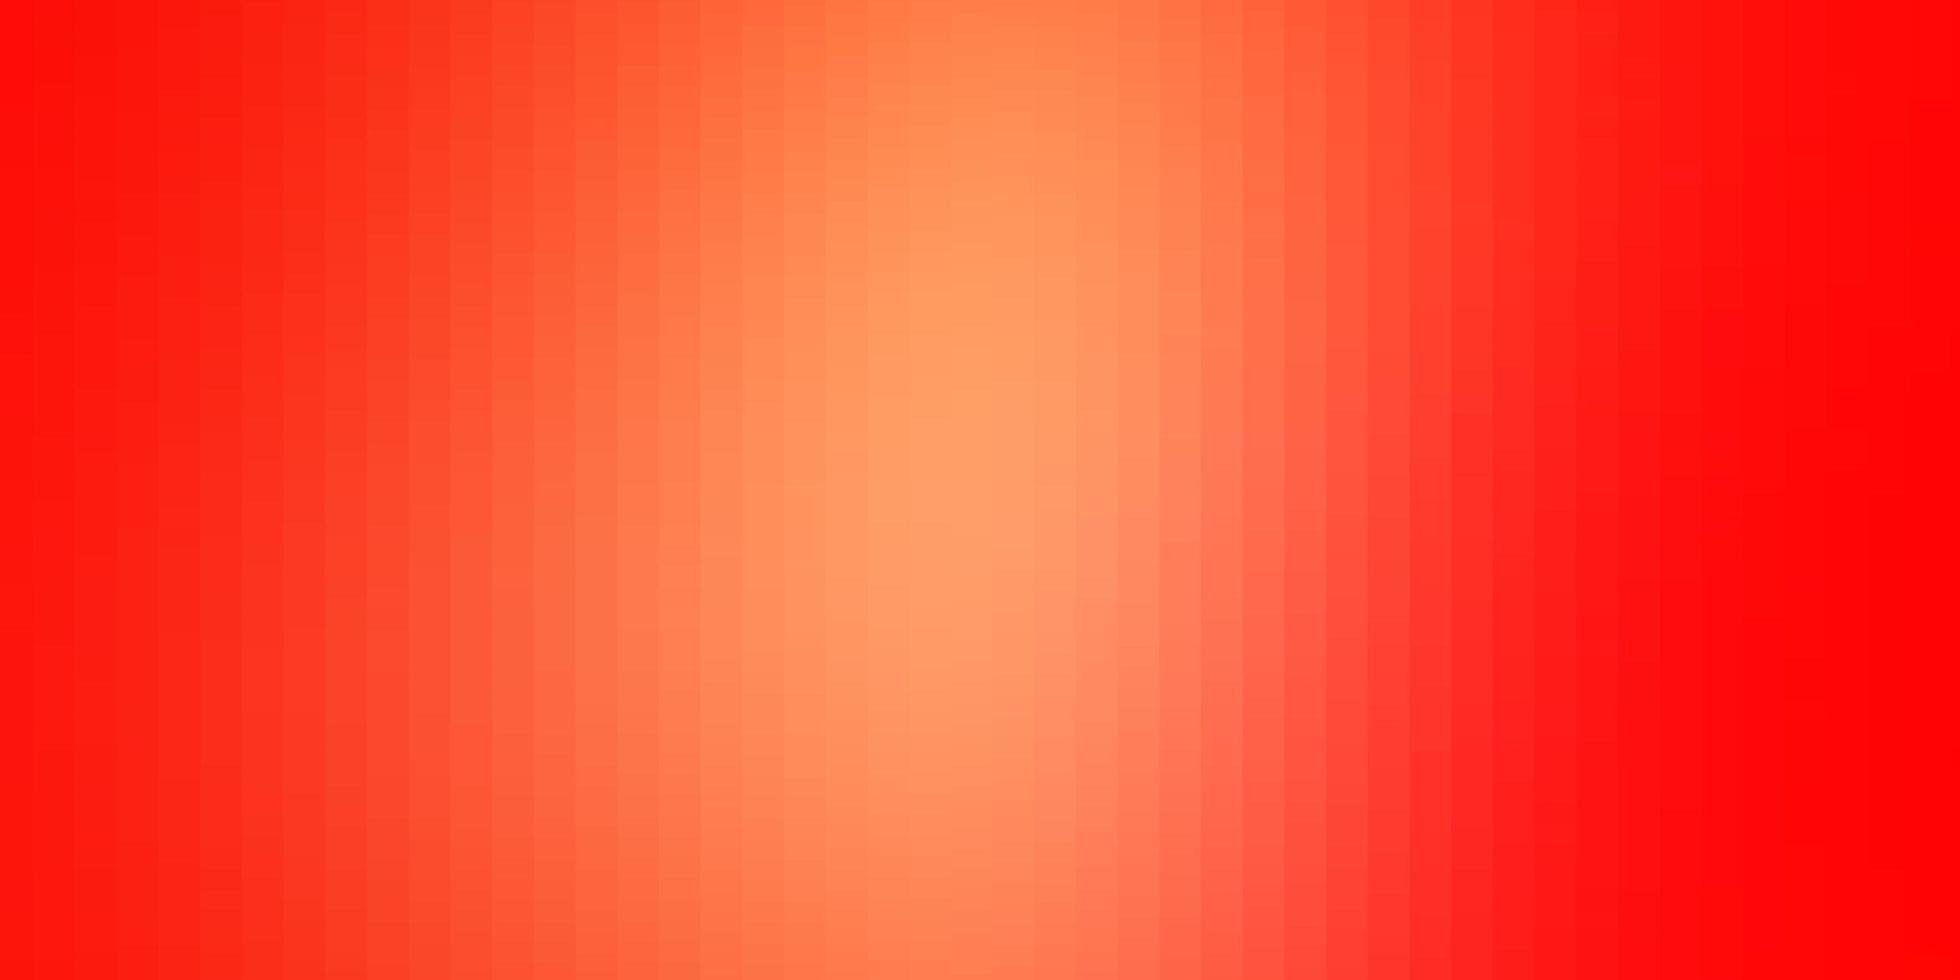 Fondo de vector rojo claro con rectángulos. Ilustración de degradado abstracto con rectángulos. patrón para folletos comerciales, folletos